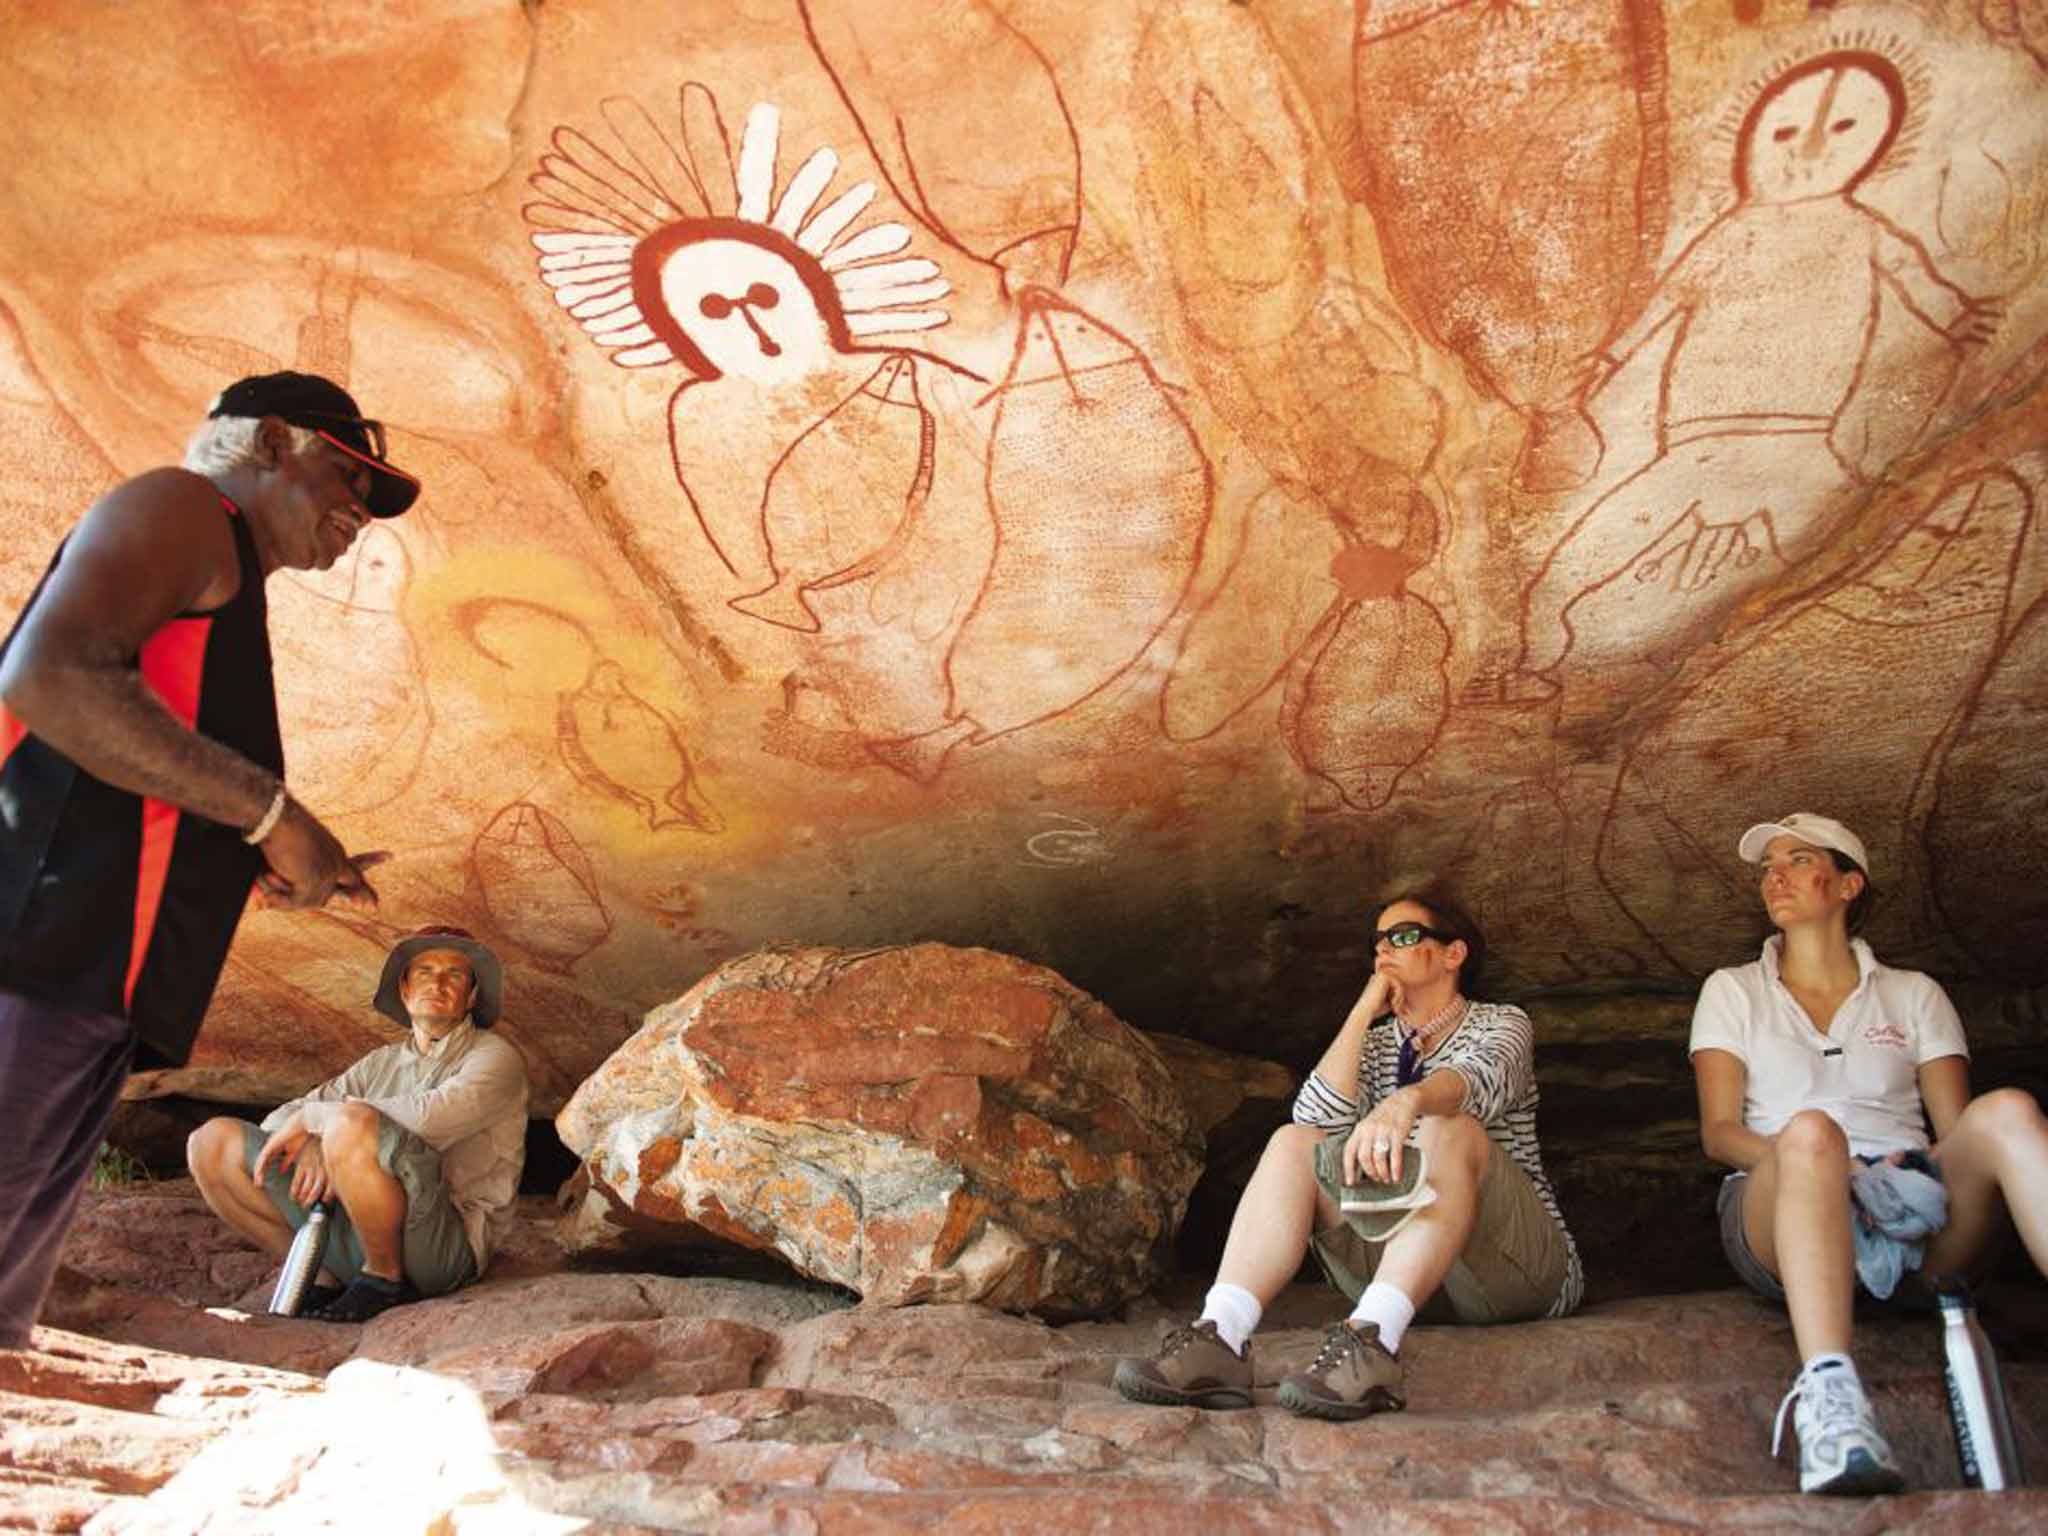 A guide explains Aboriginal rock art